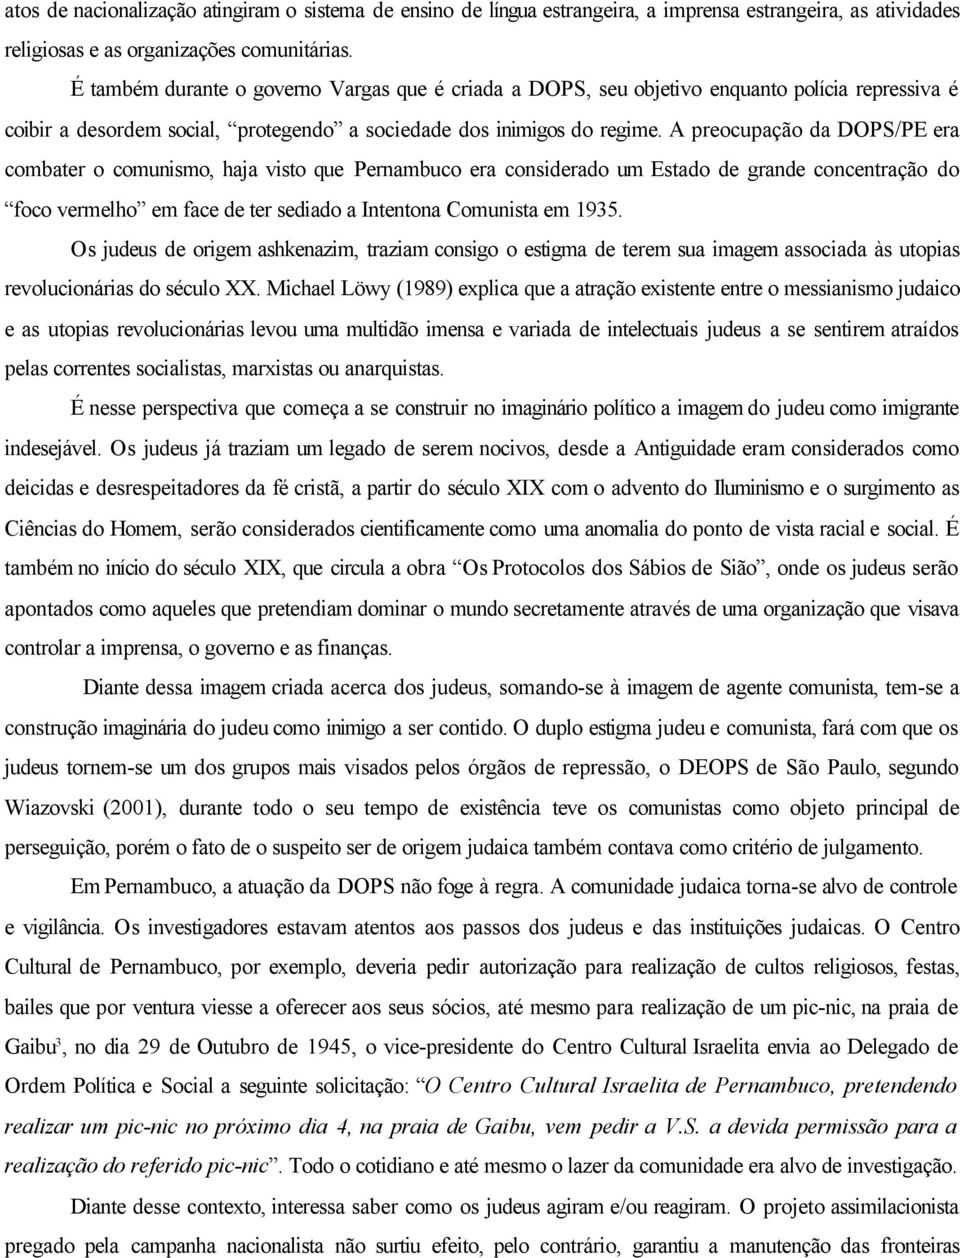 A preocupação da DOPS/PE era combater o comunismo, haja visto que Pernambuco era considerado um Estado de grande concentração do foco vermelho em face de ter sediado a Intentona Comunista em 1935.